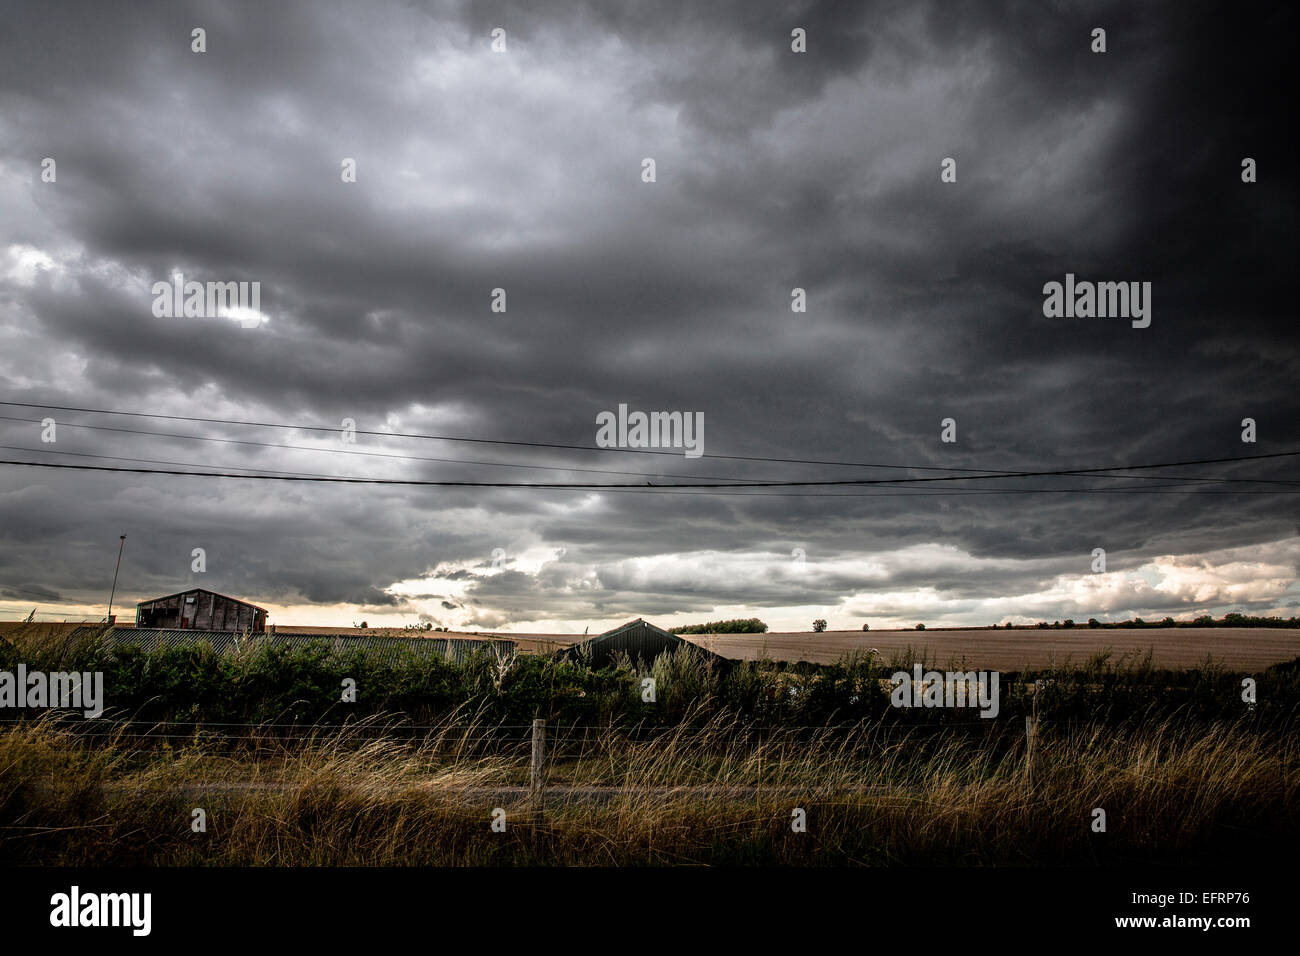 Ciel dramatique avec grey storm clouds over rural landscape Banque D'Images